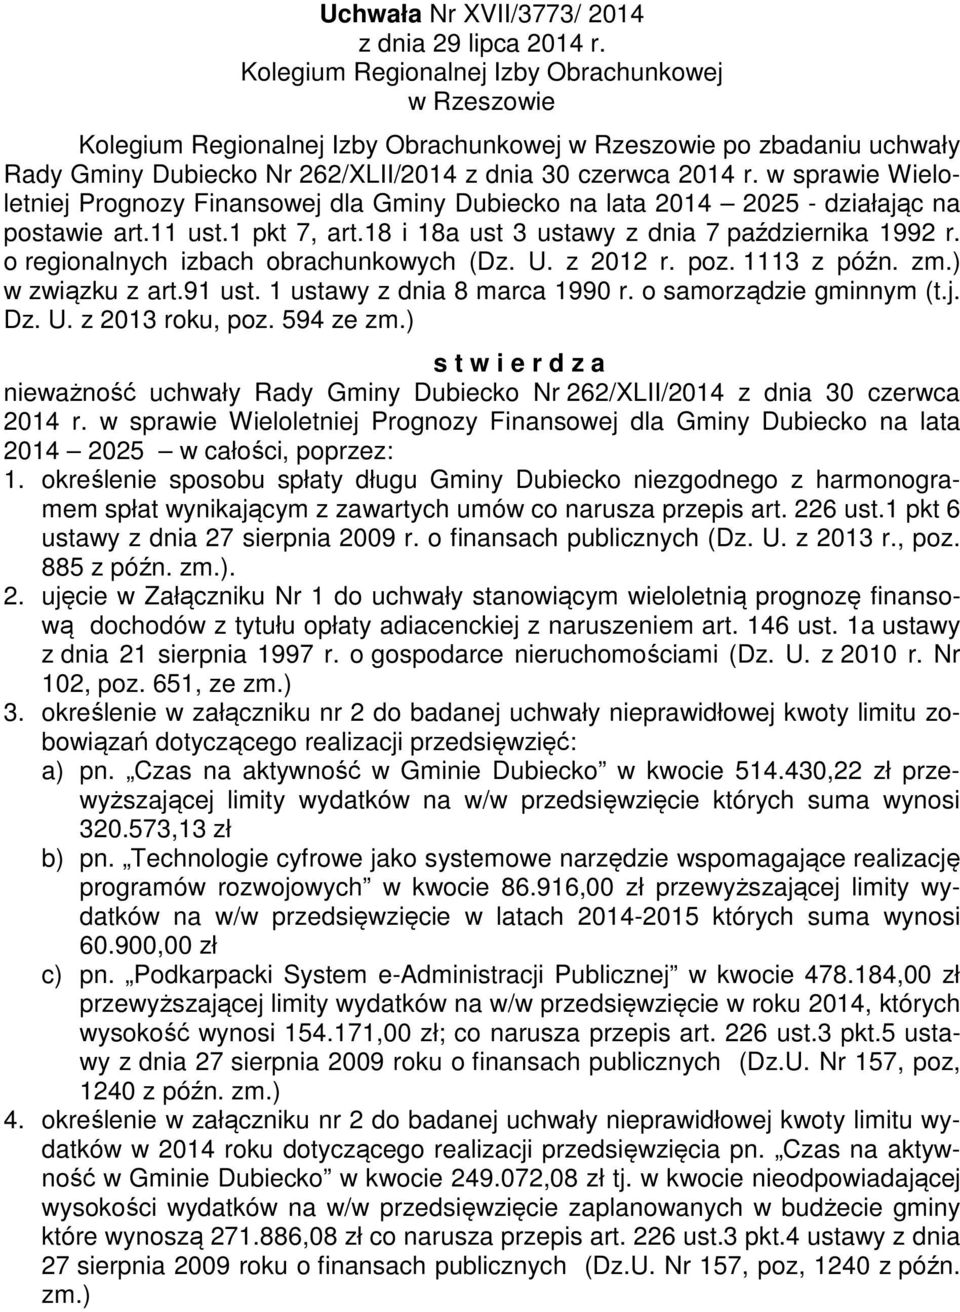 w sprawie Wieloletniej Prognozy Finansowej dla Gminy Dubiecko na lata 2014 2025 - działając na postawie art.11 ust.1 pkt 7, art.18 i 18a ust 3 ustawy z dnia 7 października 1992 r.